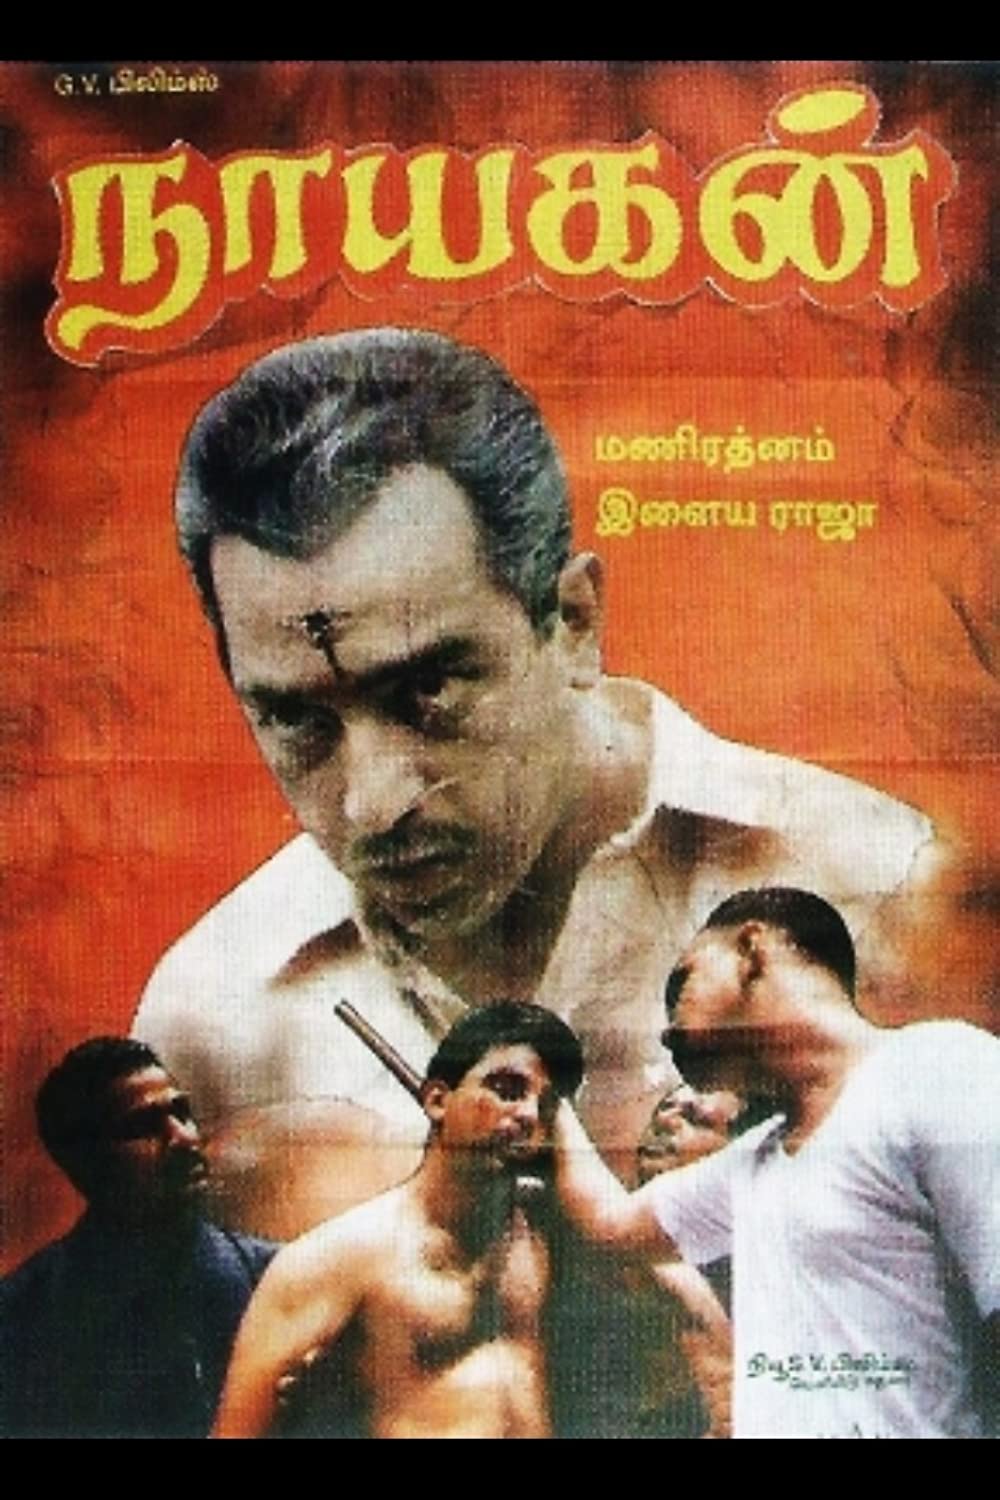 Nayakan, disutradarai oleh Mani Ratnam, adalah film gangster India favorit saya. 